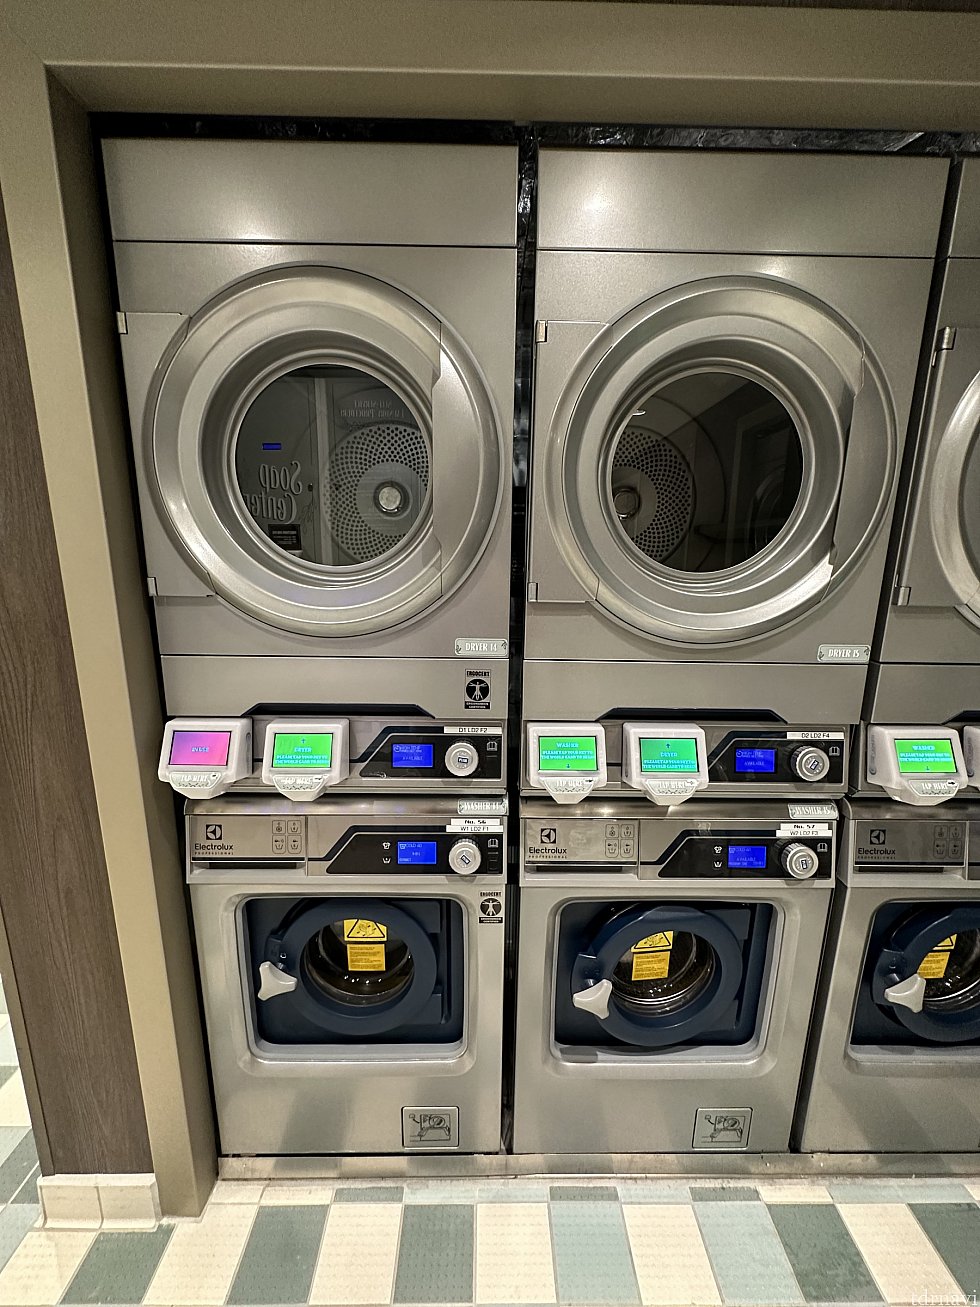 上が乾燥機で、下が洗濯機です。<br>
洗濯機が使用中なので赤く点灯しています<br>
使用可能なものは緑色です<br>
わかりづらいですが、赤い画面の下(洗濯機の左上)が洗剤の投入口です